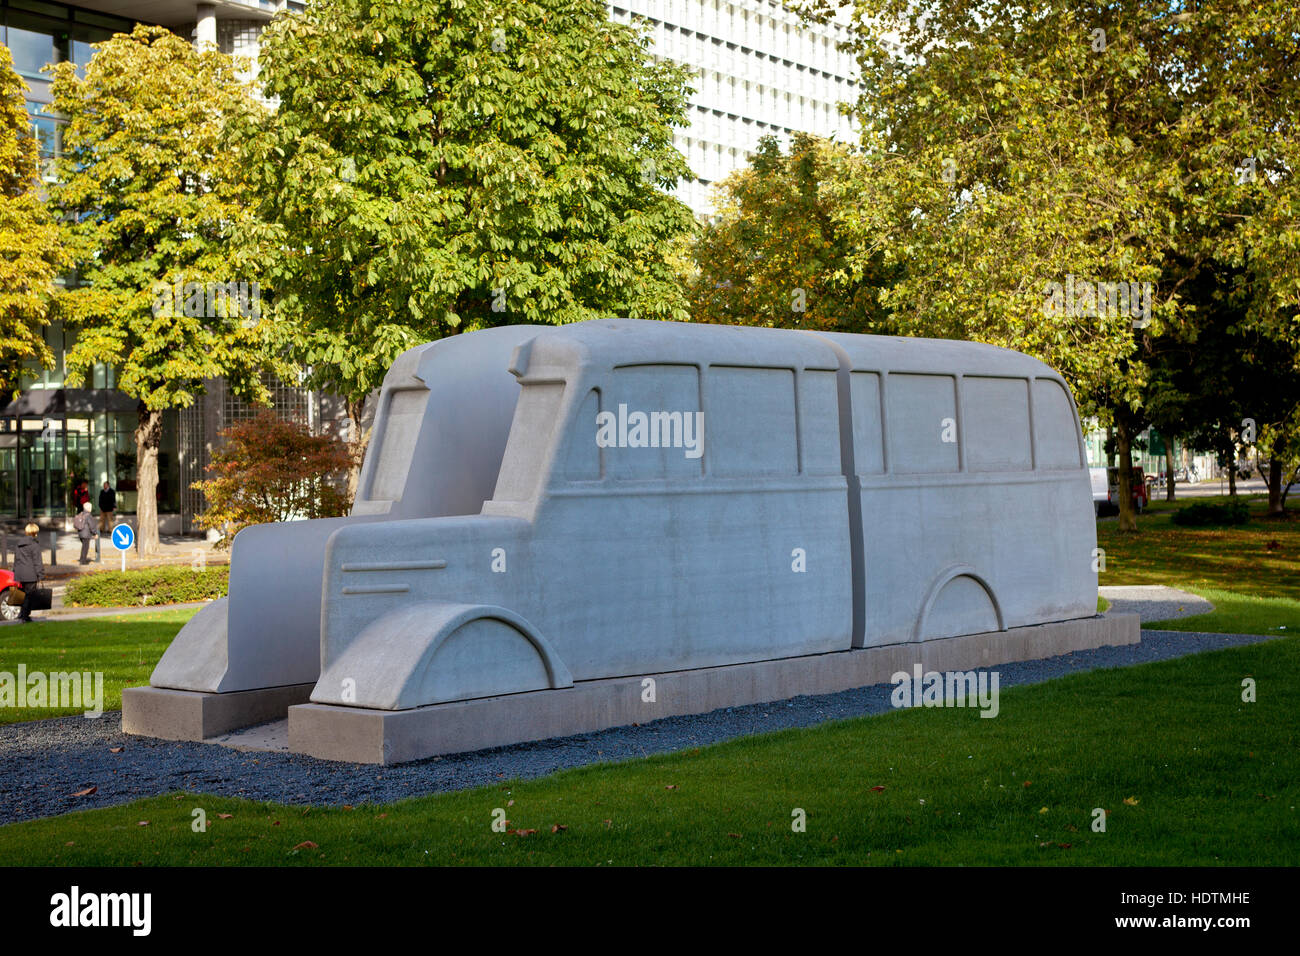 Alemania, Colonia, monumento de la gris de autobuses en frente del edificio en el barrio Landeshaus Deutz Foto de stock